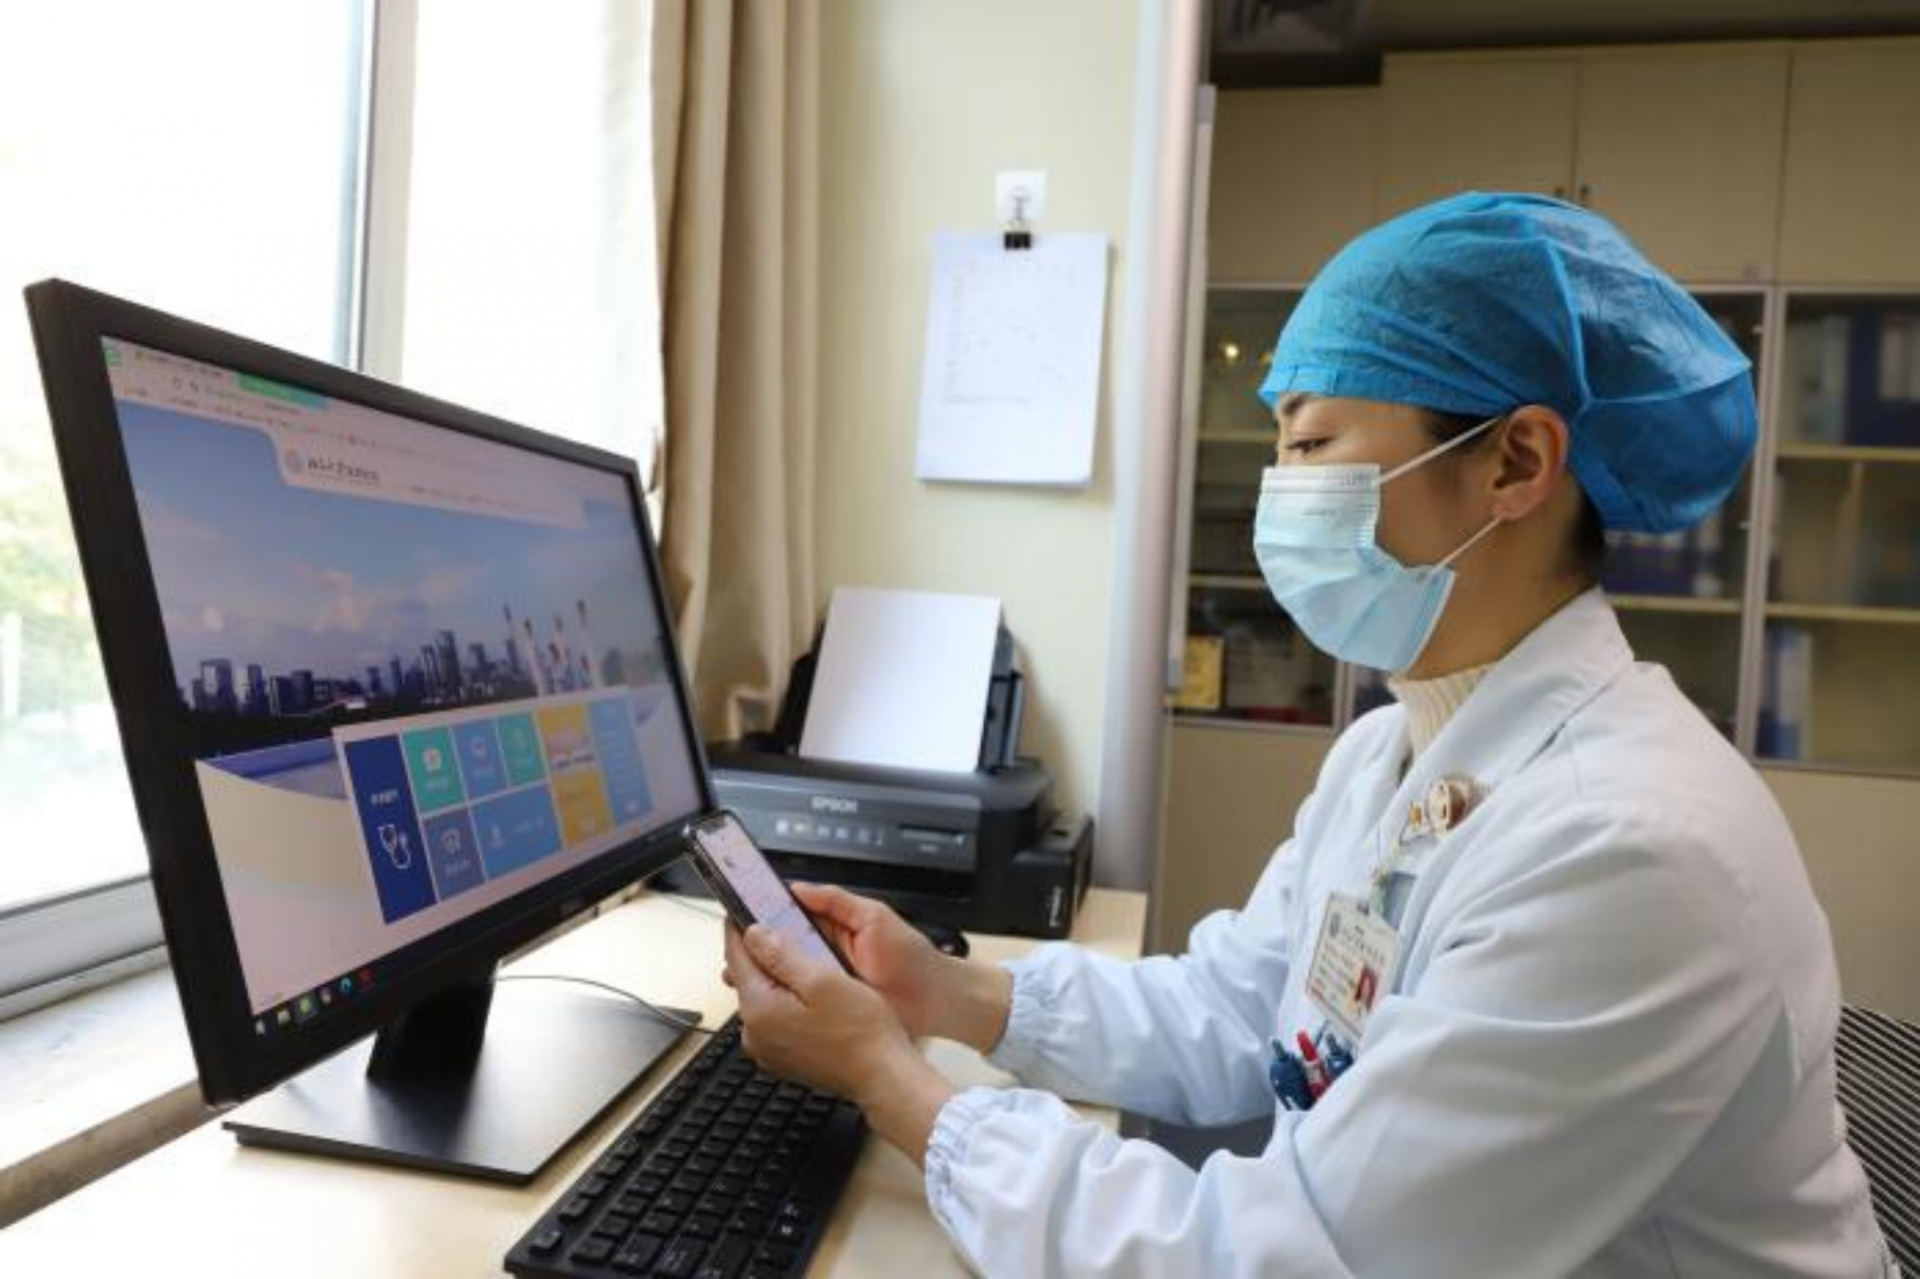 疫情期间少跑动想看病怎么办北大深圳医院互联网医院线上诊疗来帮忙